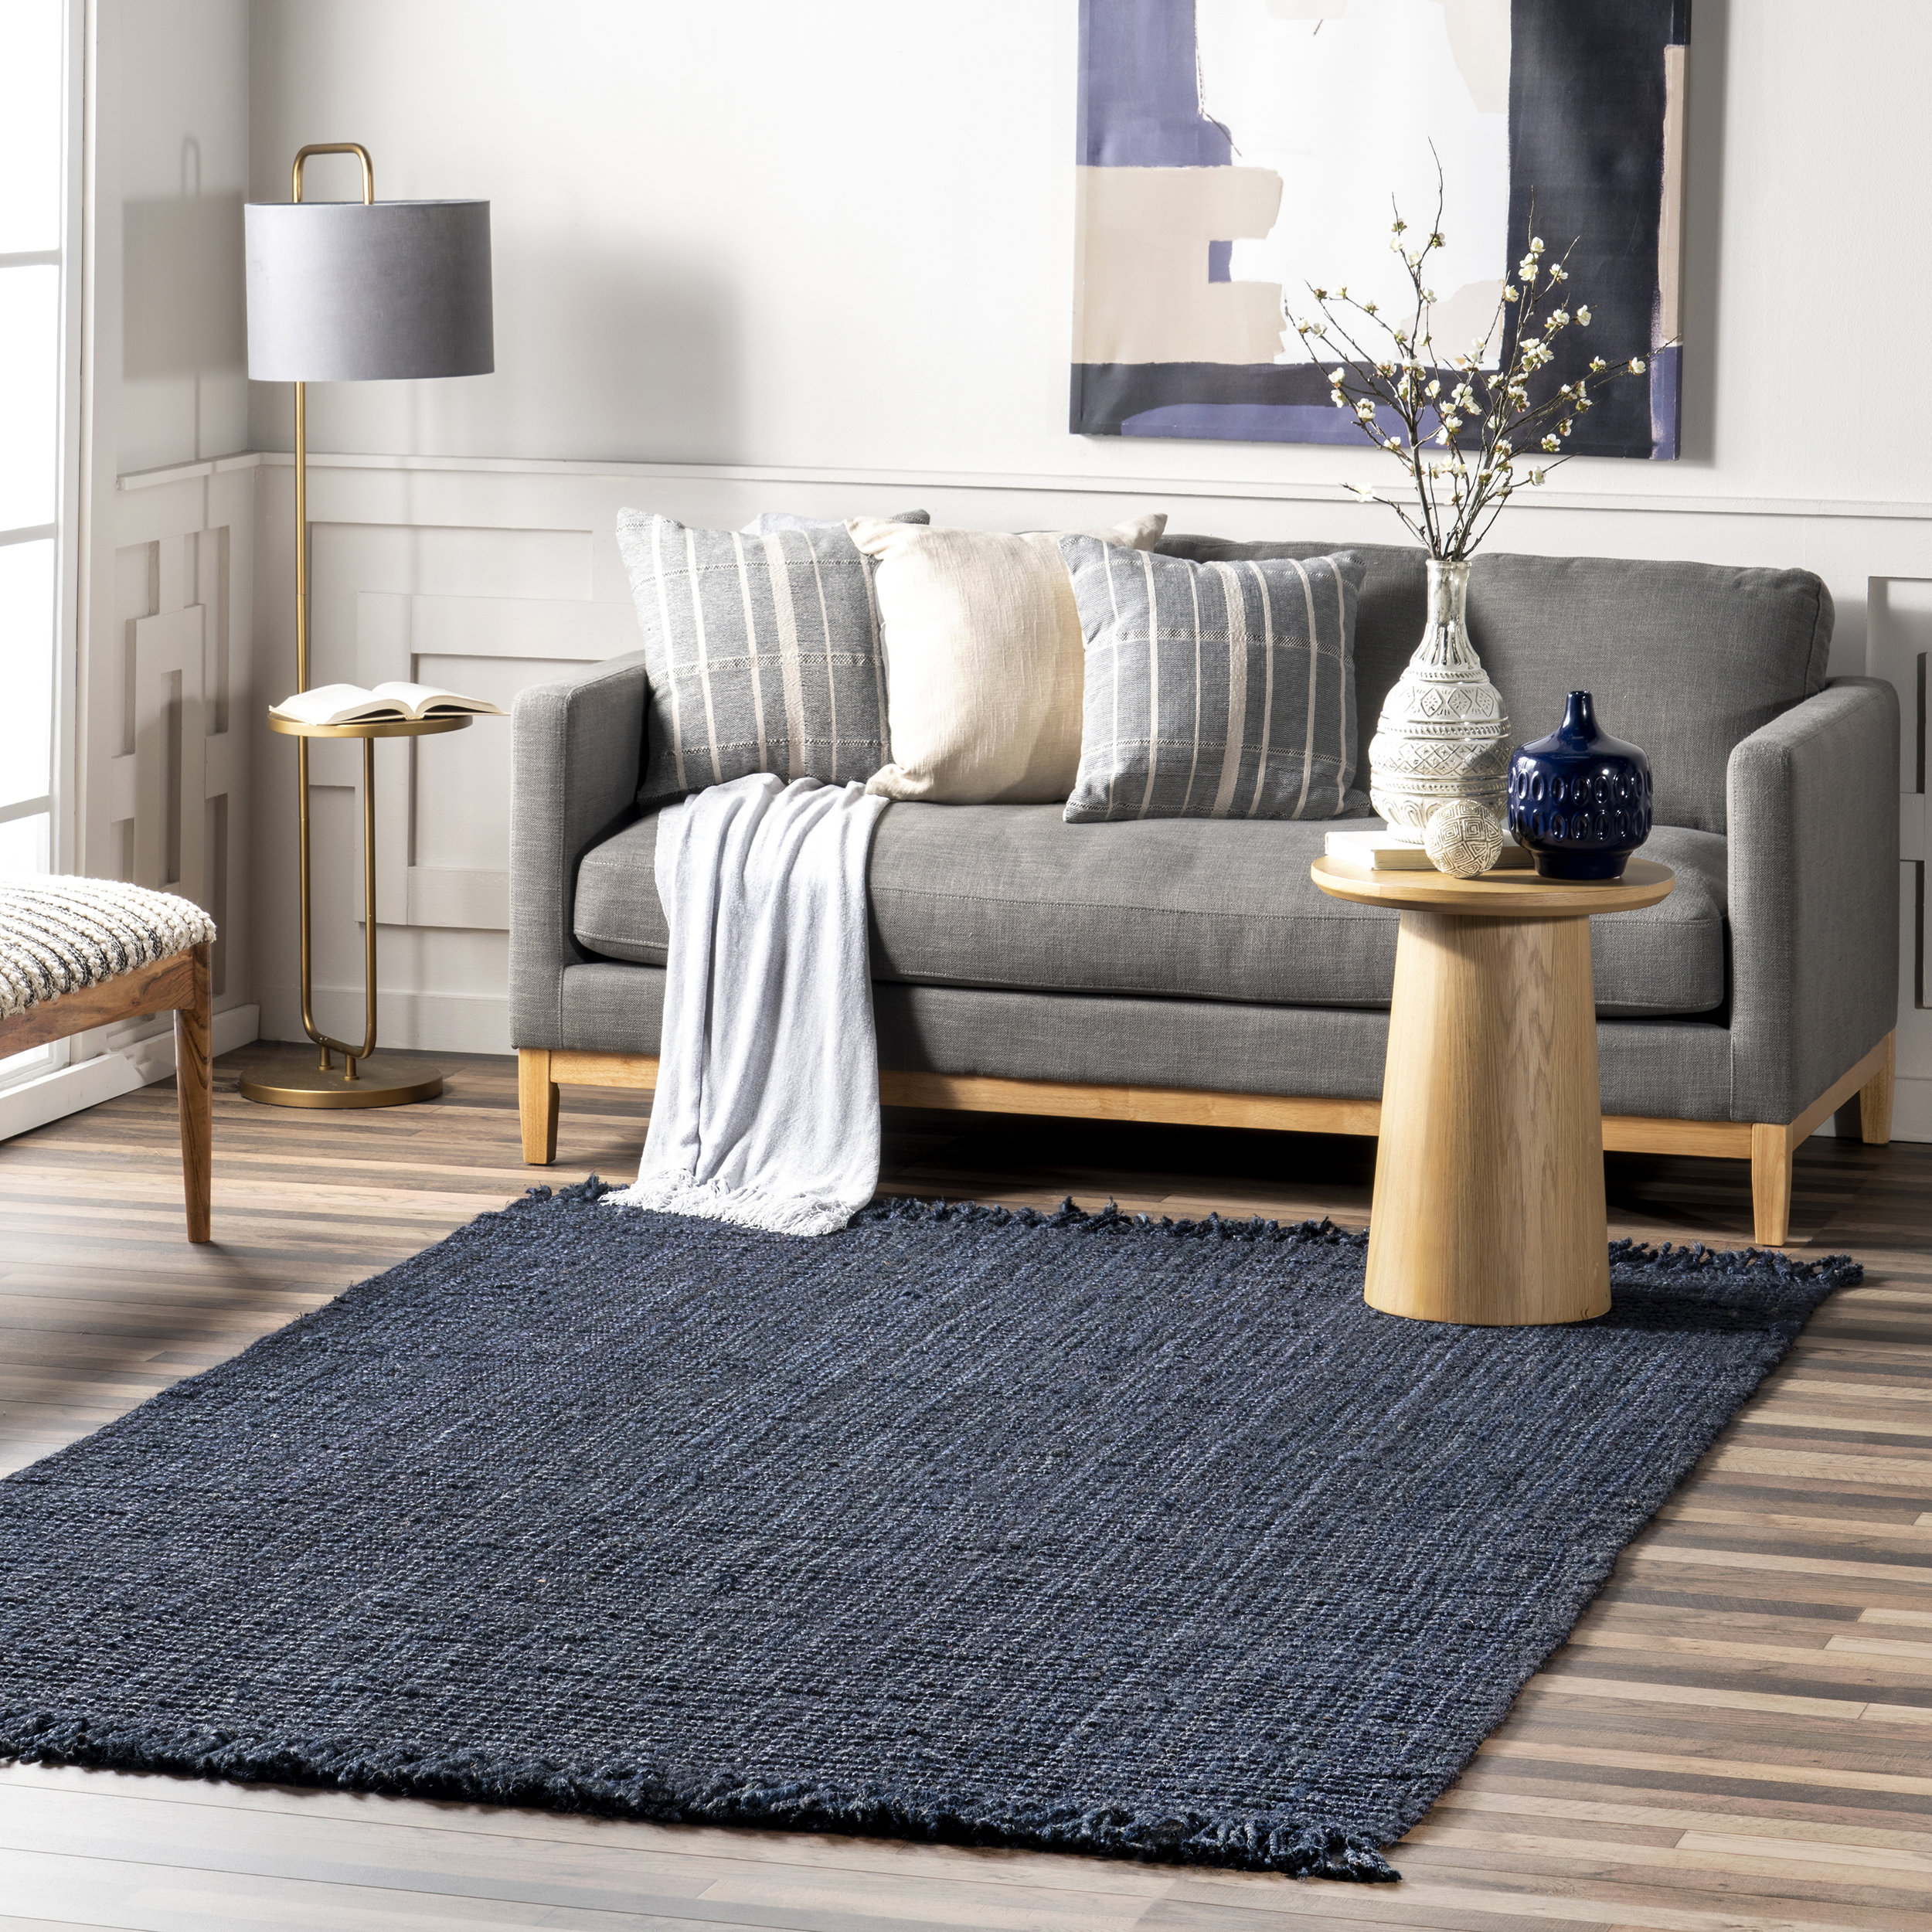 The lv area rug carpet living room rug carpet home decor dark type